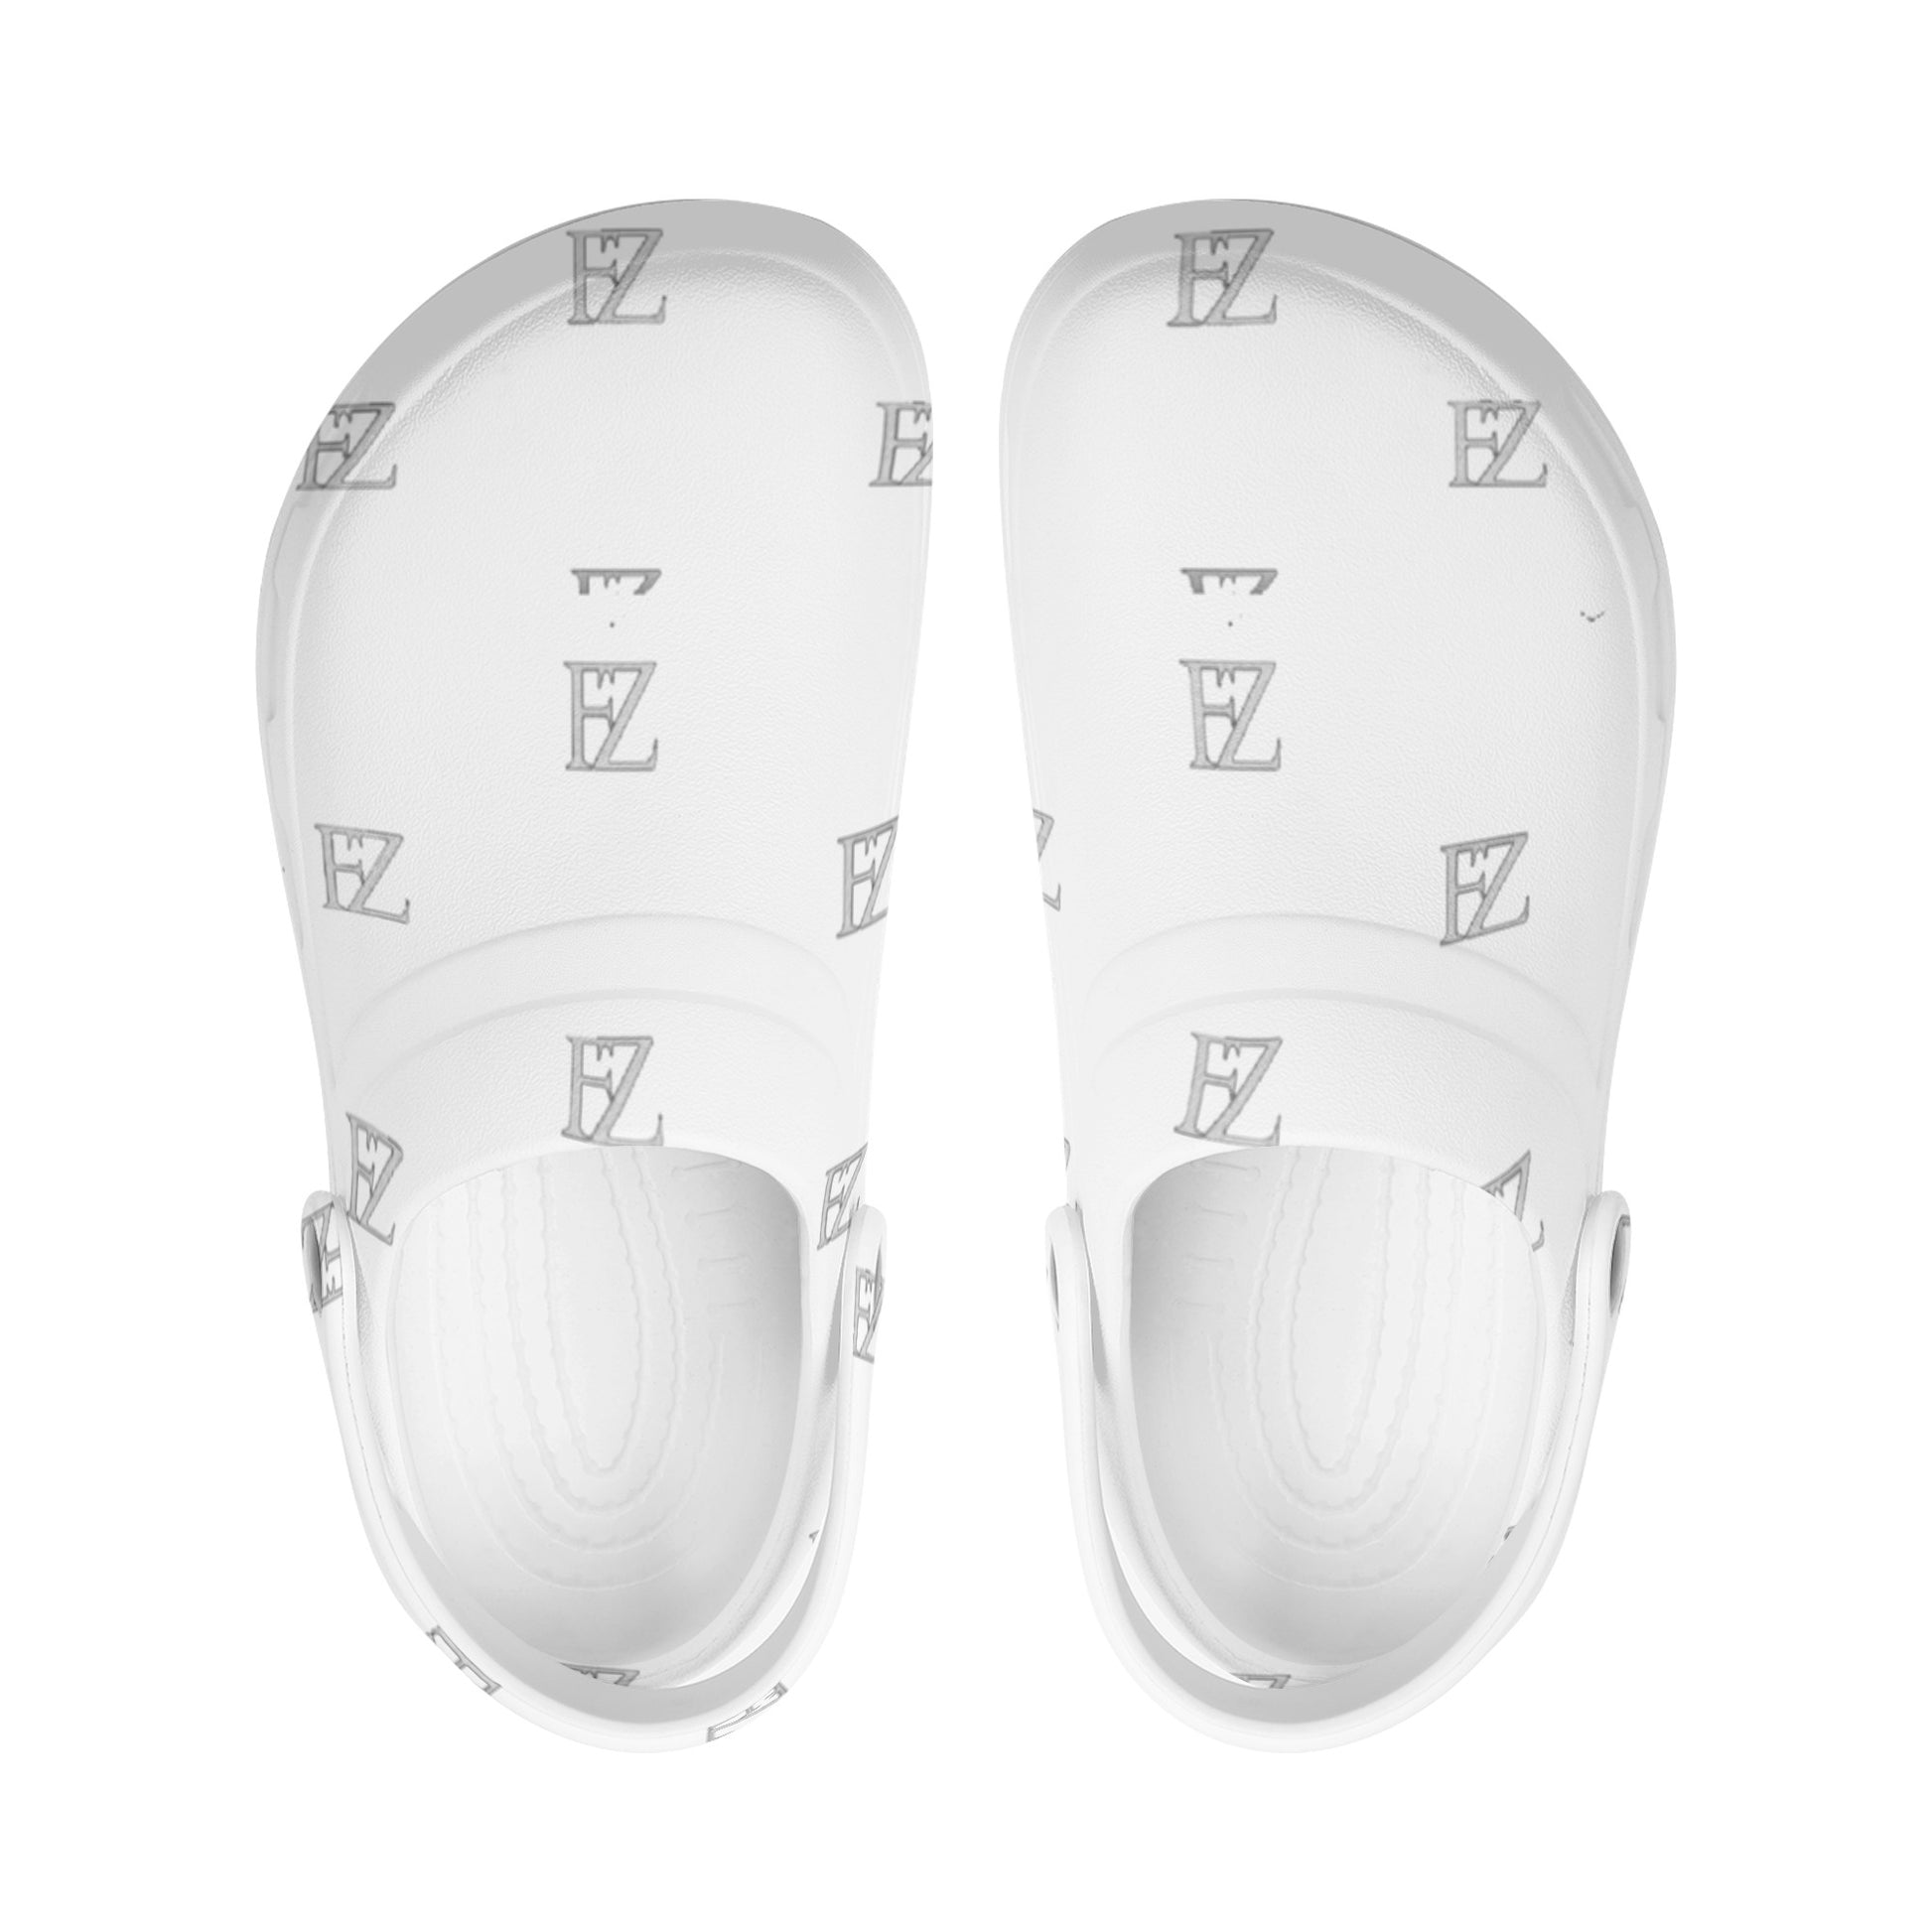 FZ Women's Nursing Slip On Clogs - FZwear